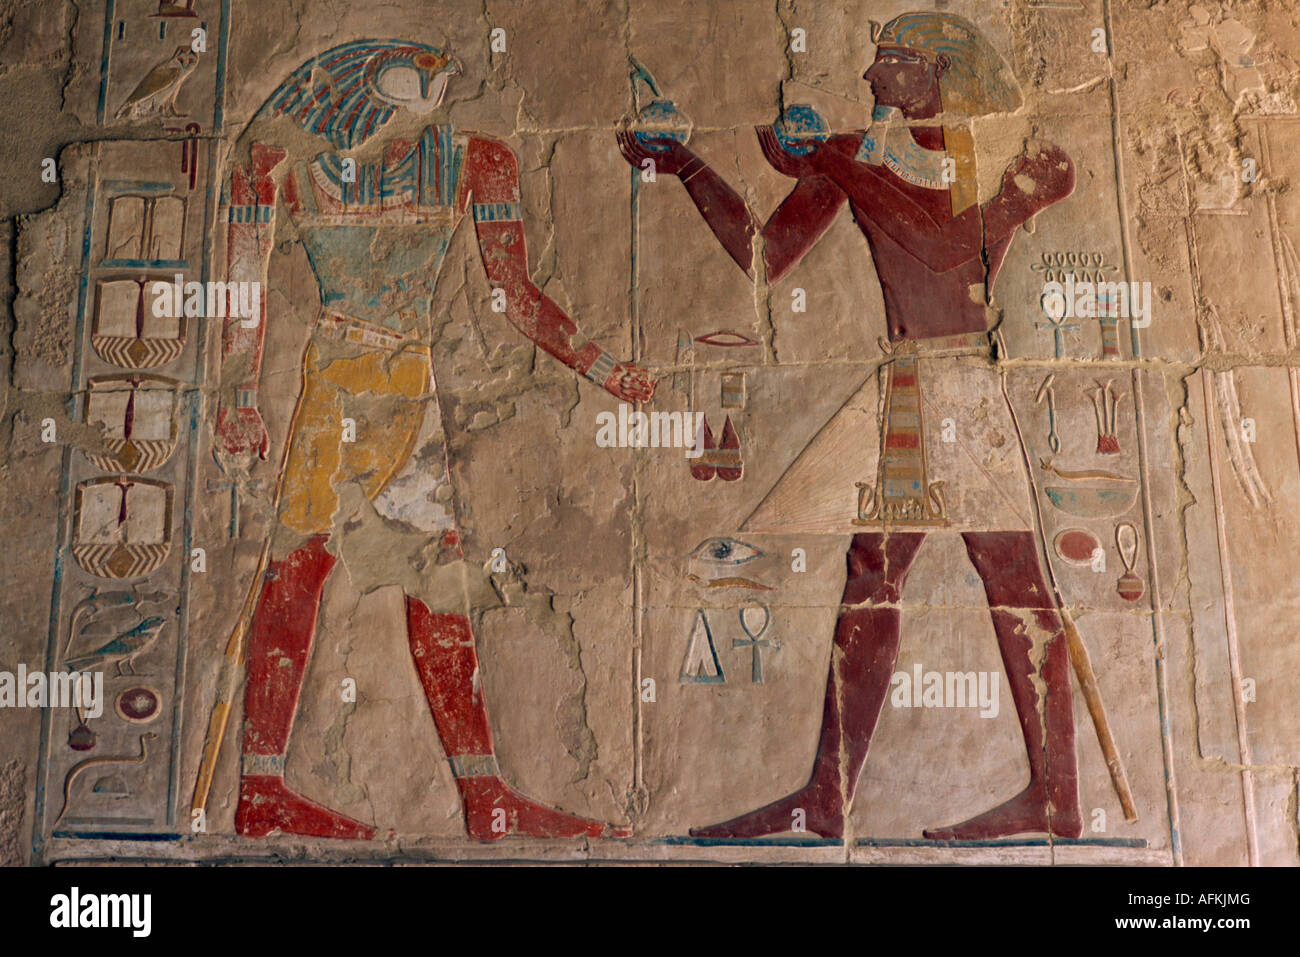 Egipto, el Norte de África y Oriente próximo valle del Nilo Tebas Deir el-Bahri Hatshepsut templo mortuorio capilla de Anubis alivio de Tutmosis Foto de stock